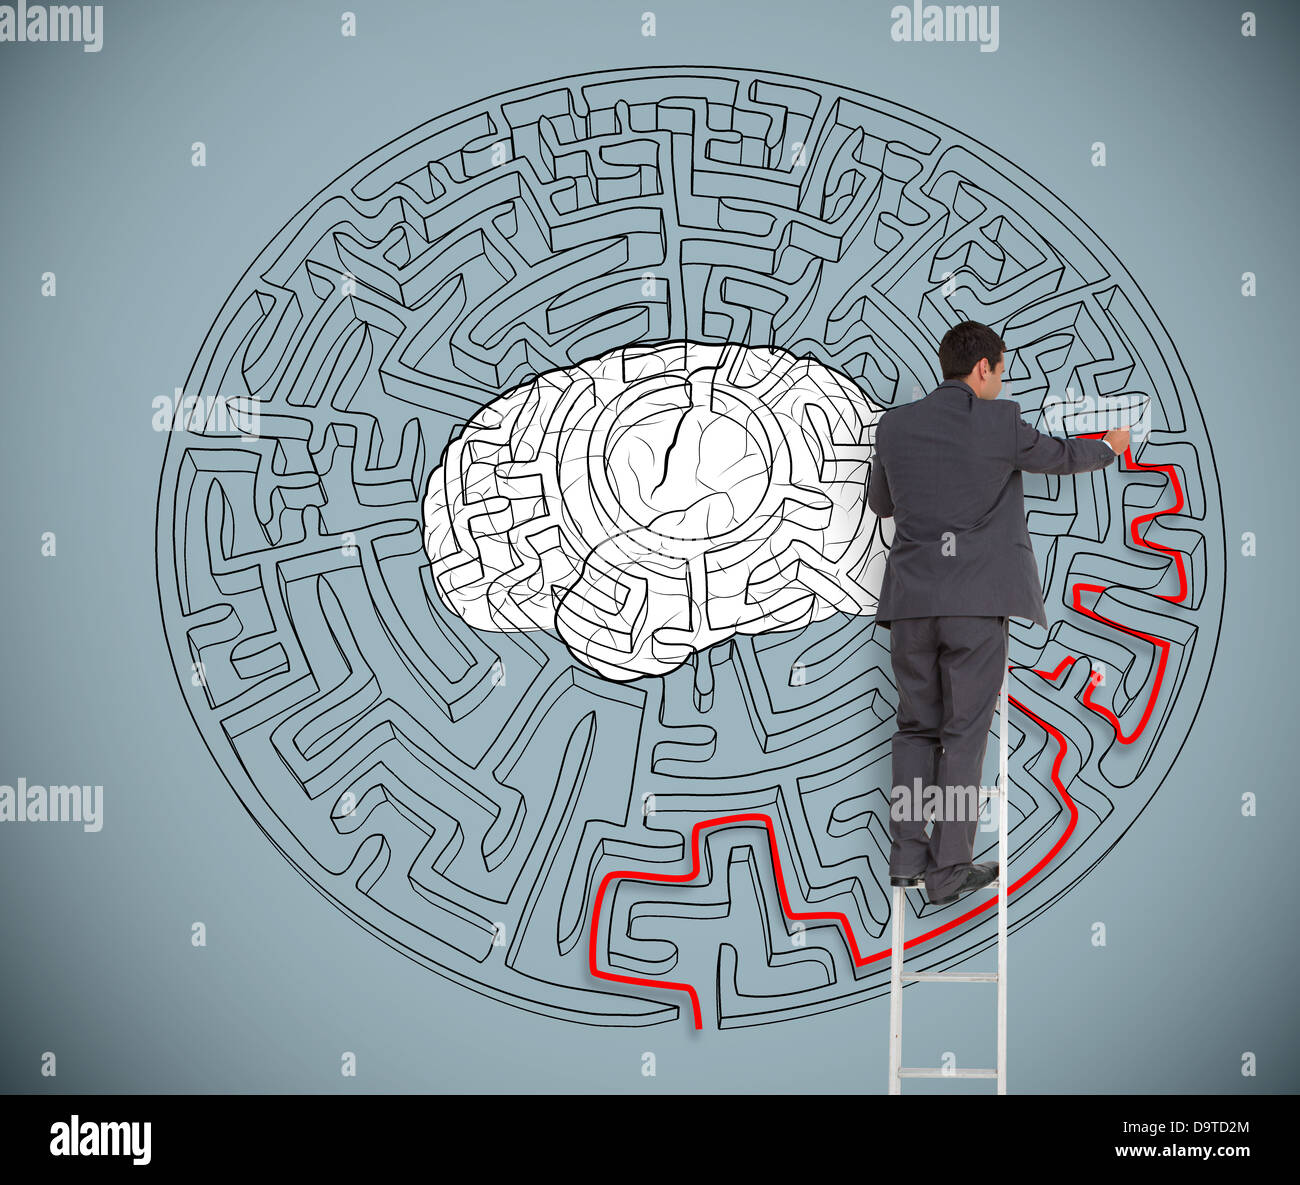 Geschäftsmann versucht, ein großes Labyrinth mit einem Gehirn-Illustrationen zu lösen Stockfoto